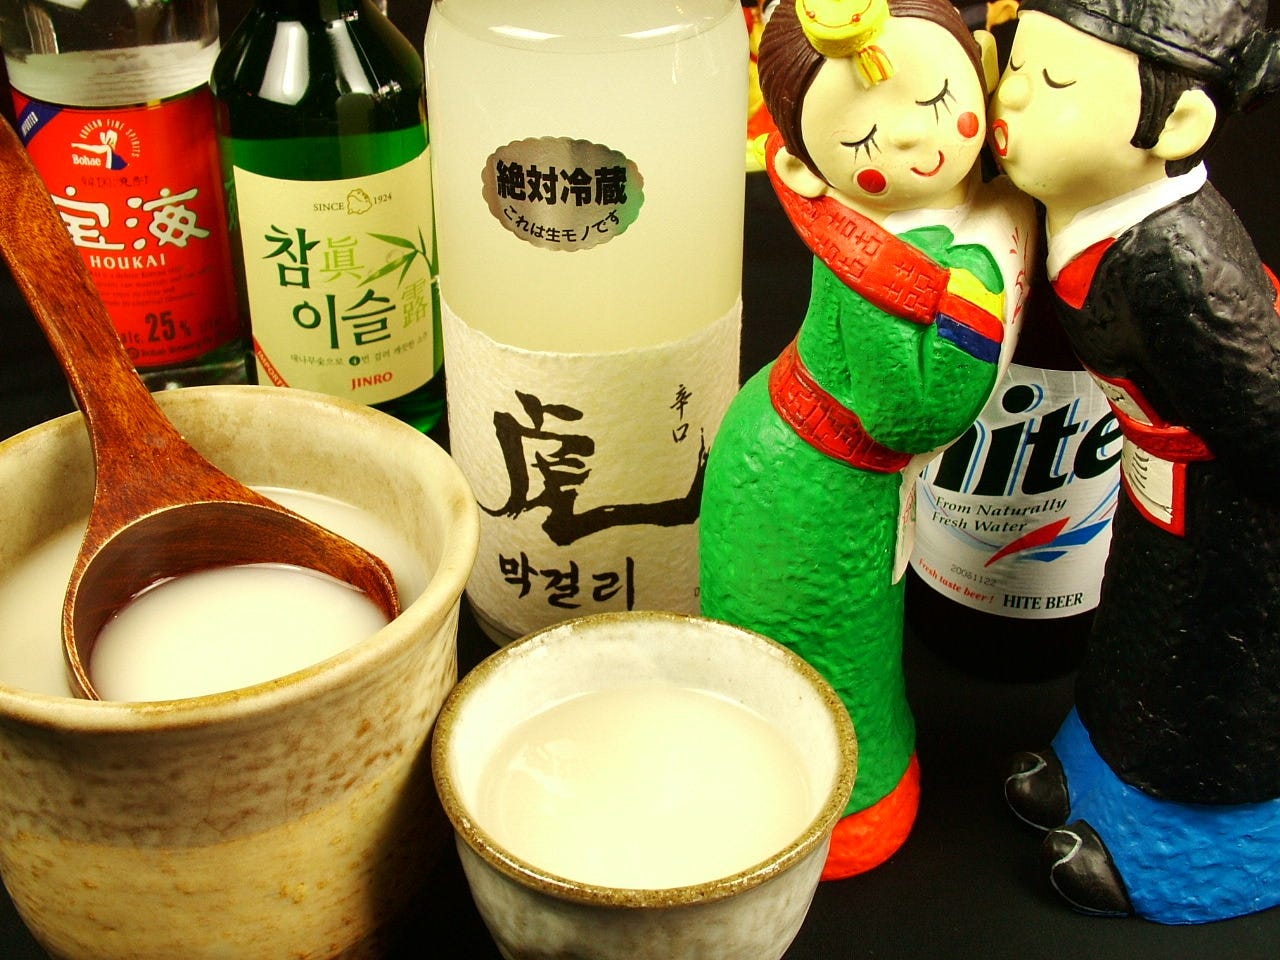 眞露･マッコリ･百歳酒など
美味しい韓国酒もいっぱい♪